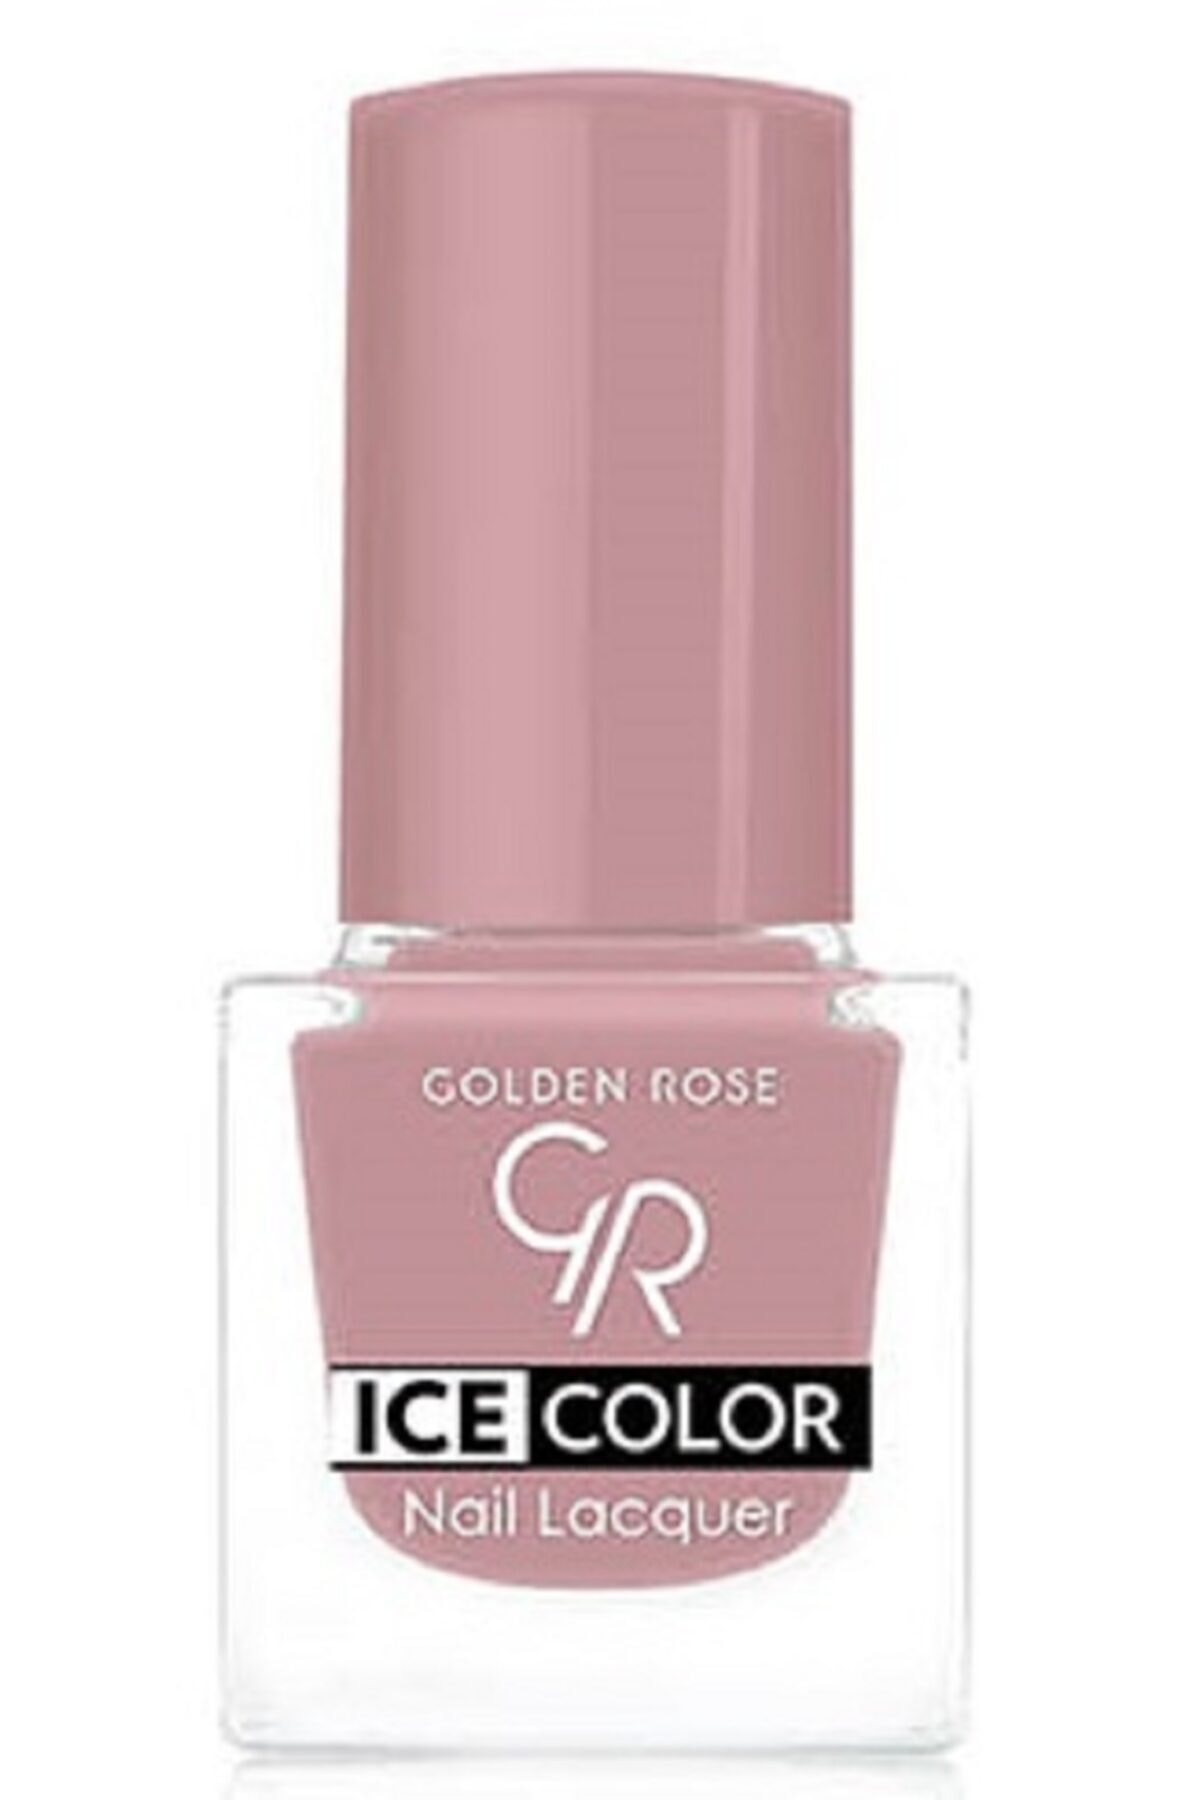 لاک ناخن یخی آیس چیک ICE شماره 166 رنگ صورتی گلدن رز Golden Rose